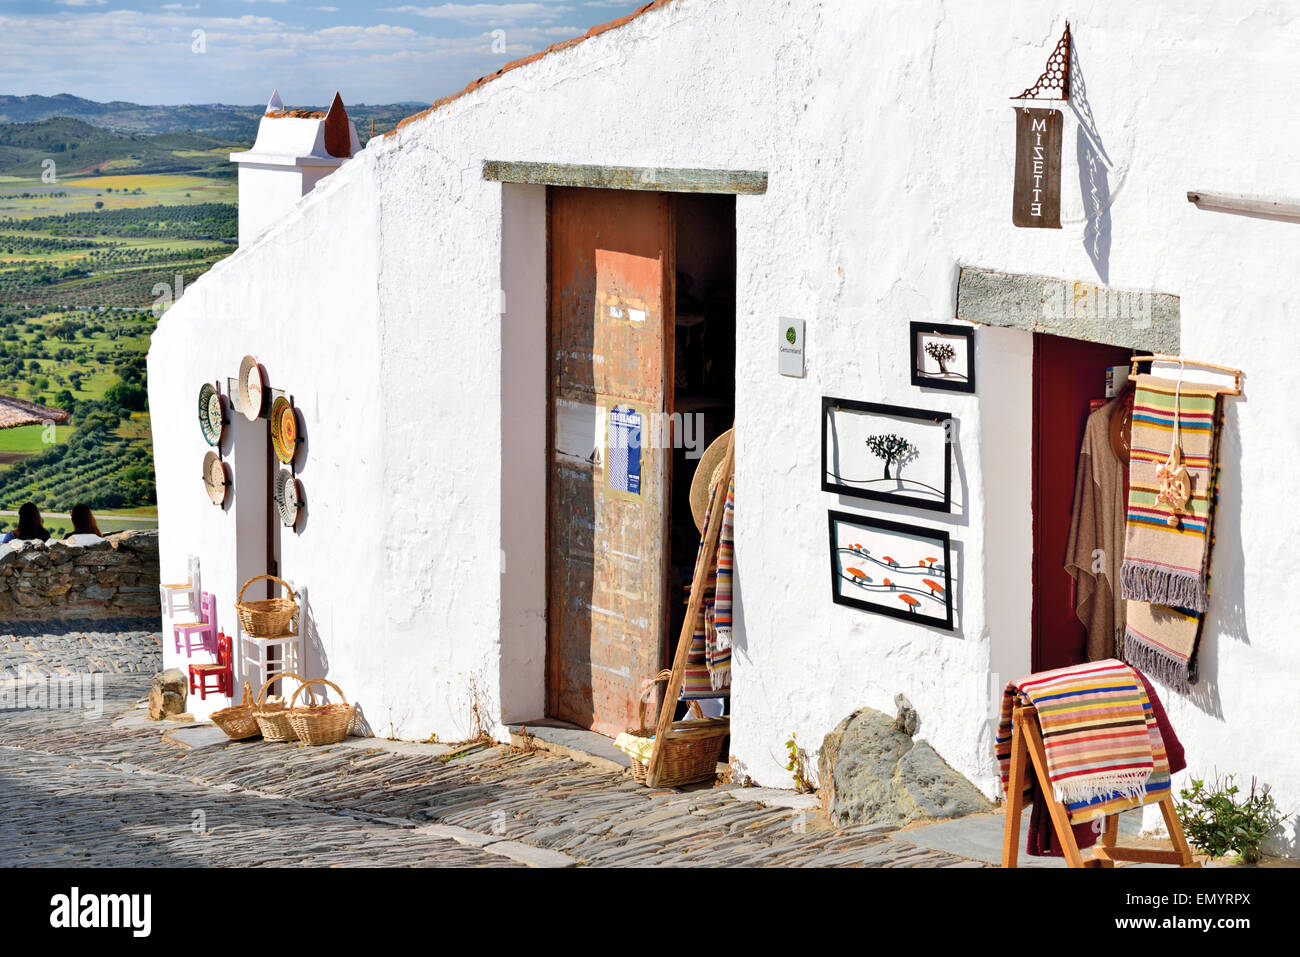 Portogallo Alentejo: negozi di artigianato e vista panoramica nel villaggio storico Monsaraz Foto Stock